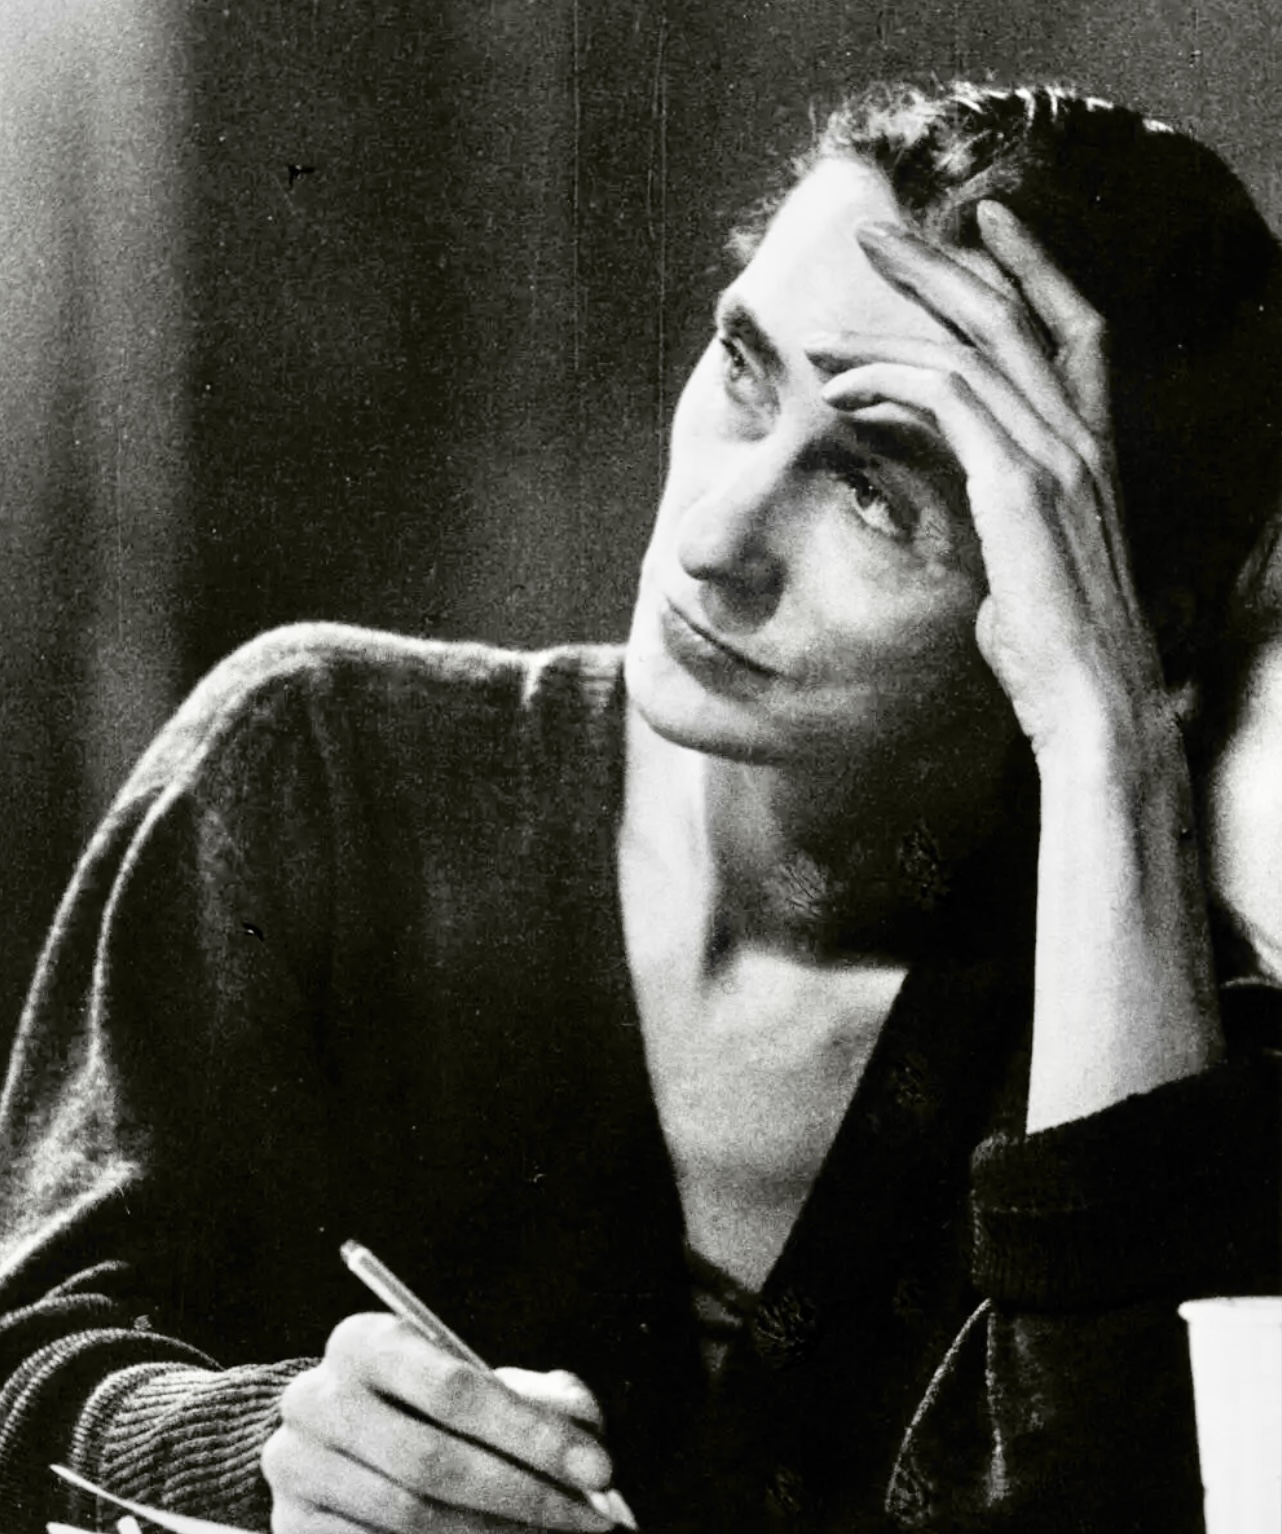 Une photo en noir et blanc d'une femme écrivant à un bureau, capturant l'essence de son mouvement gracieux et de son expression artistique contemporaine.